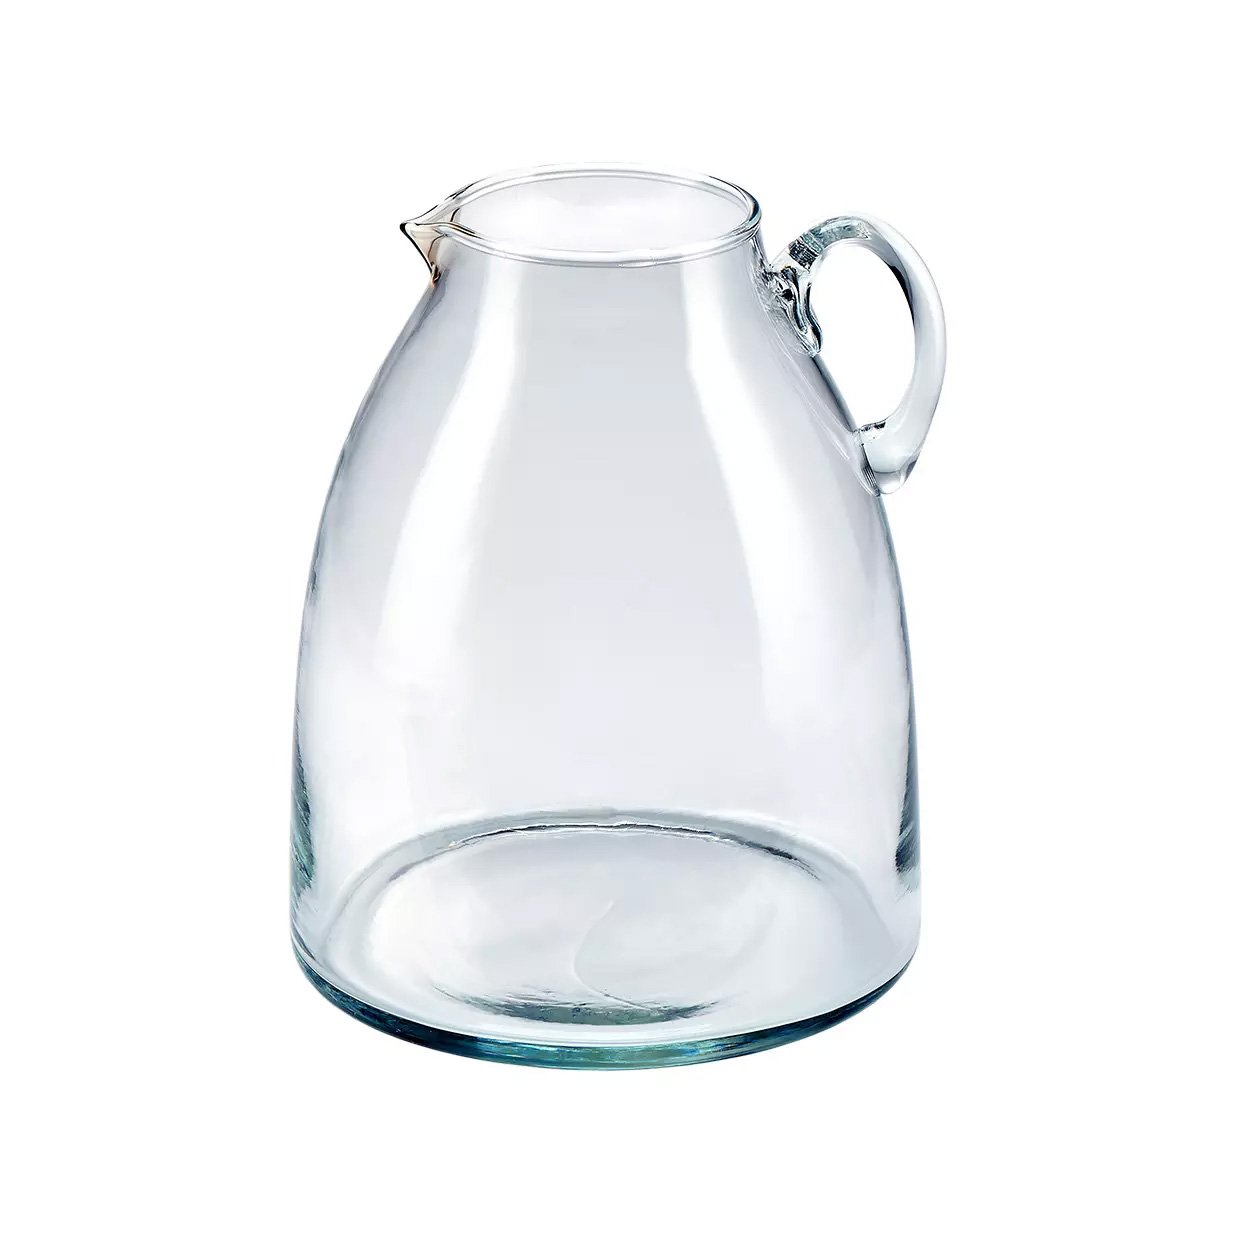 Glass vase product image